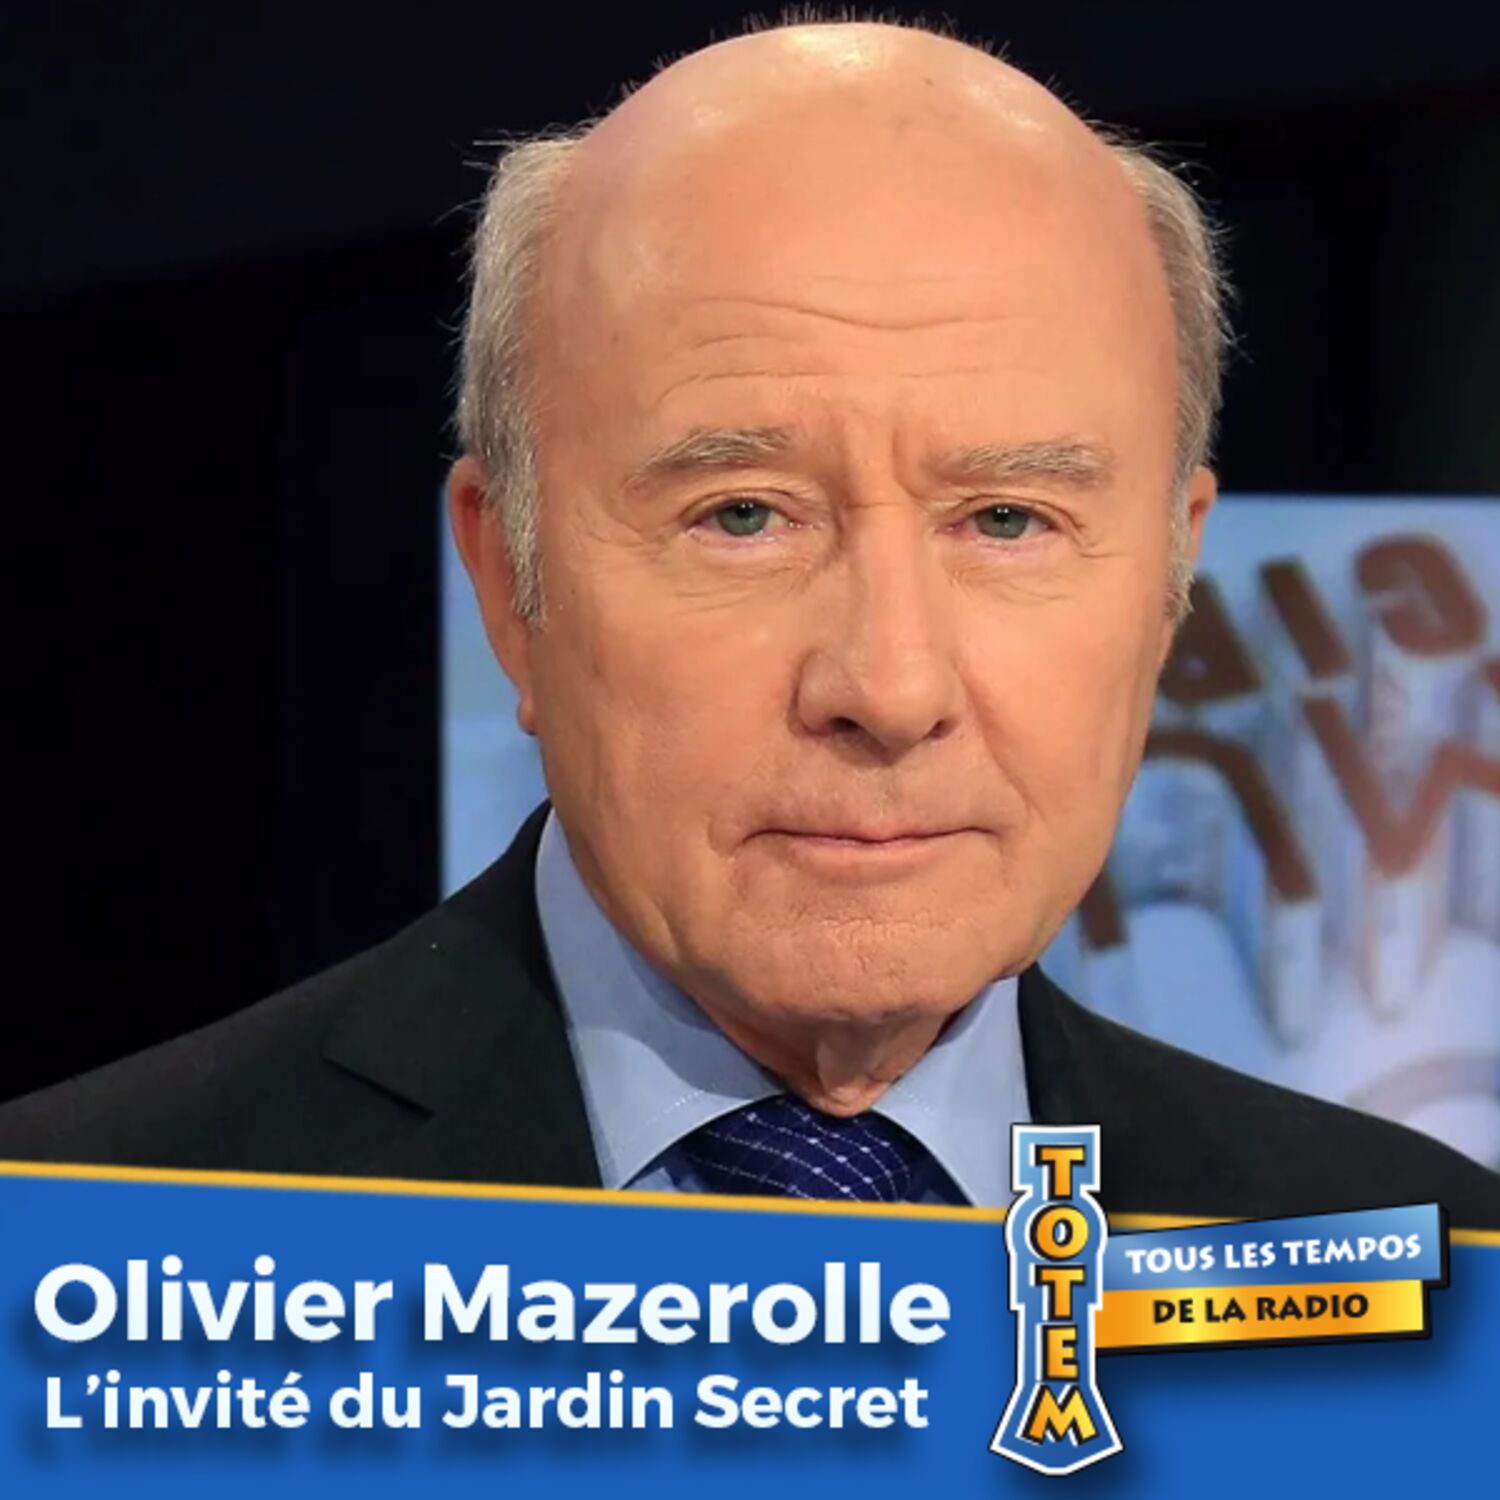 Olivier Mazerolle et son passage du sport à la politique